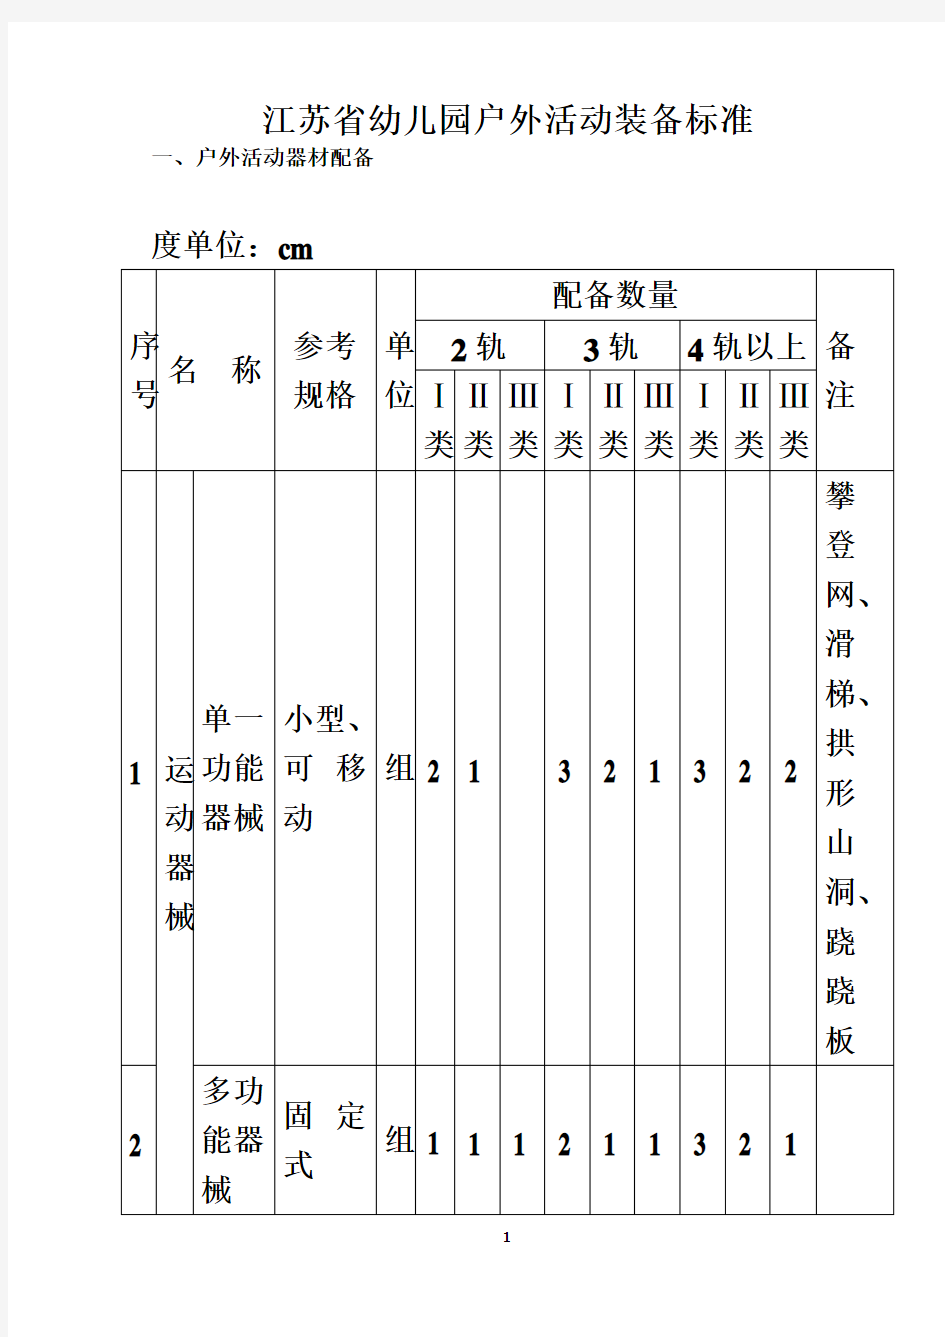 江苏省幼儿园教育技术装备标准-(1)